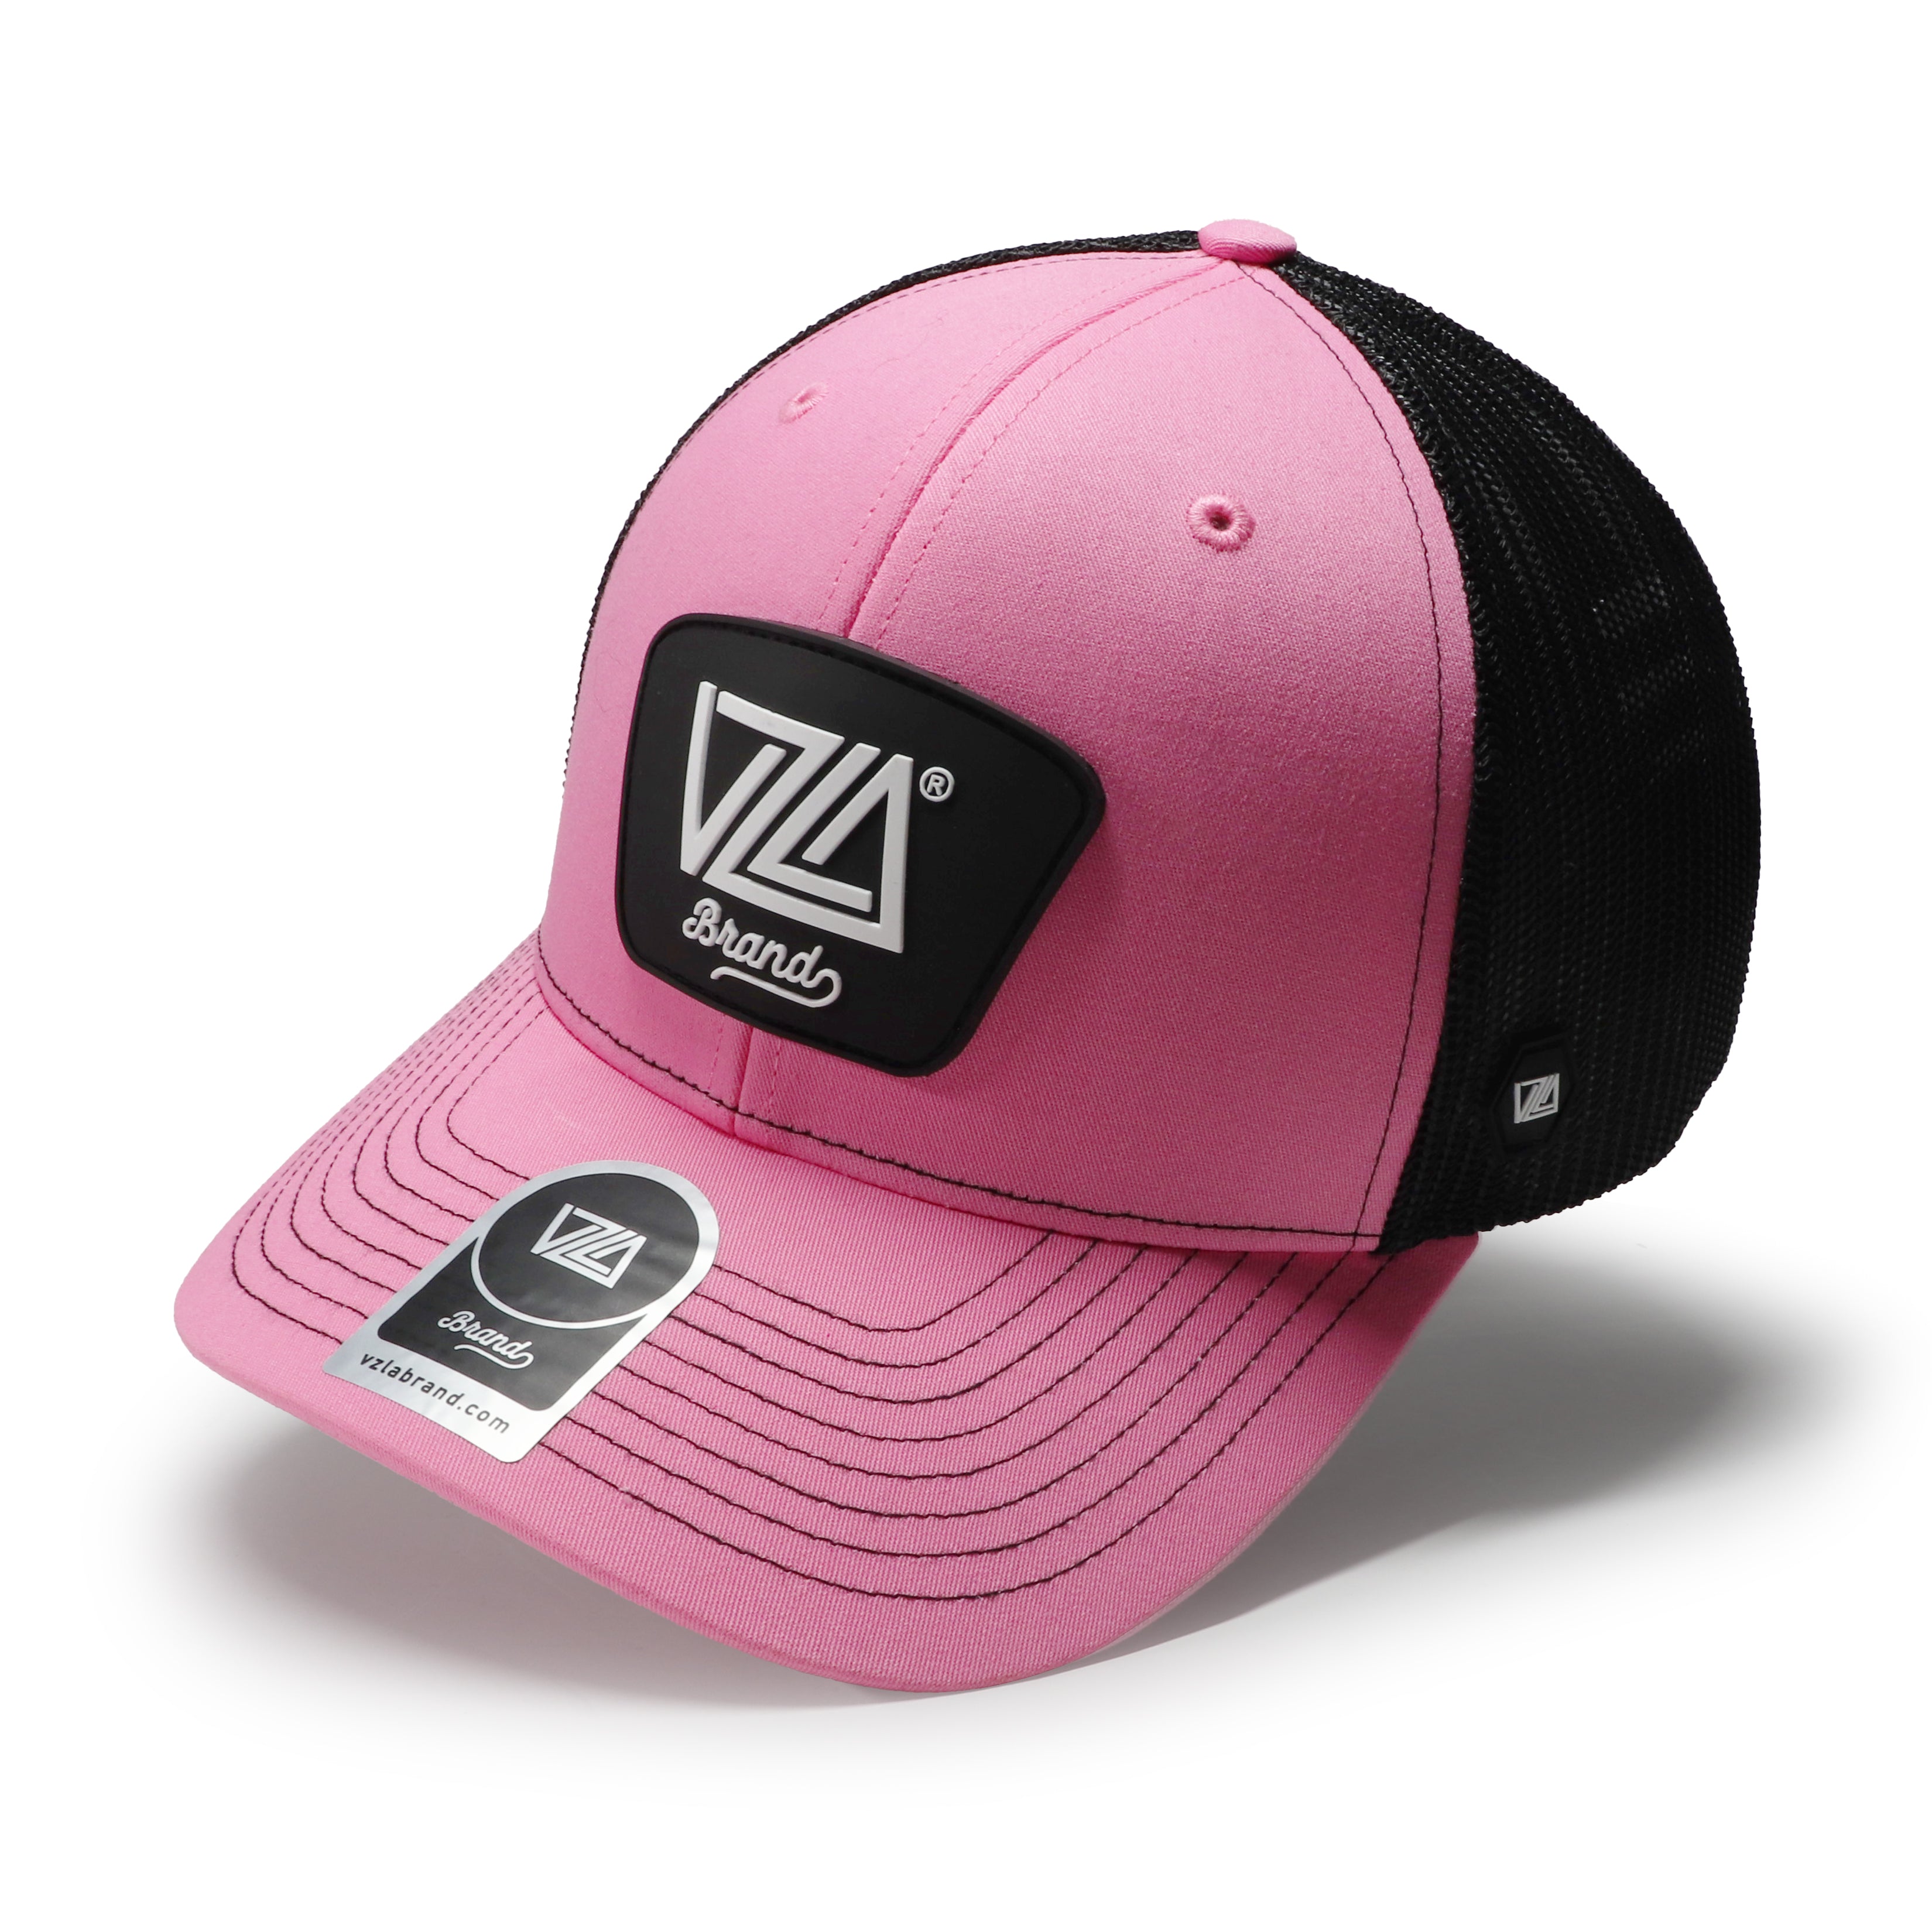 VZLA Trucker Hot Pink/Black